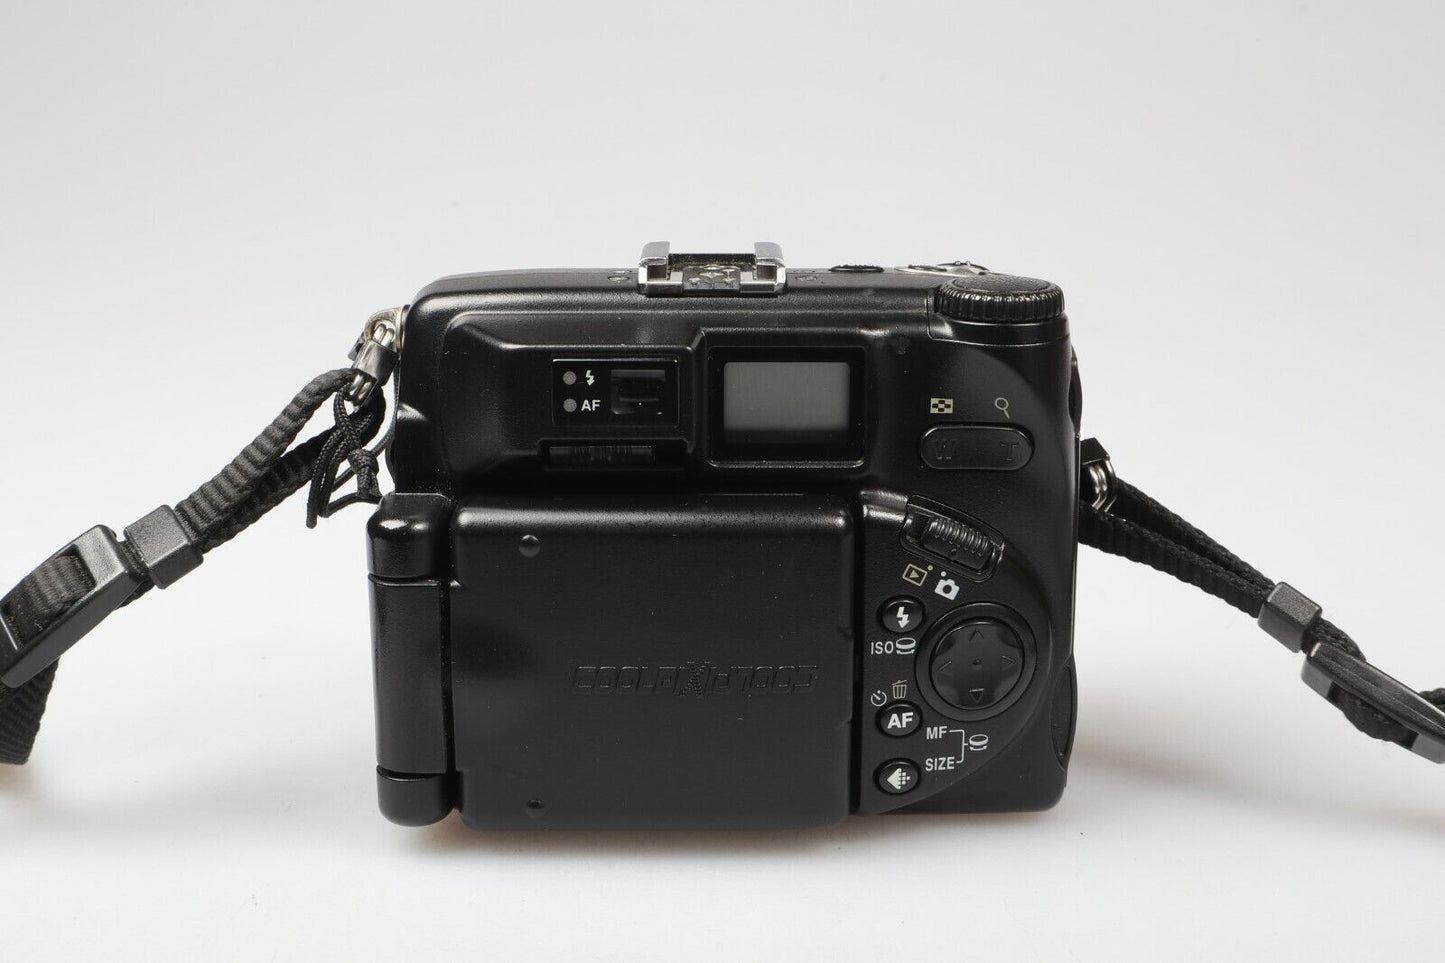 Nikon Coolpix P5000 | Digital Compact Camera | 10.0MP | Black